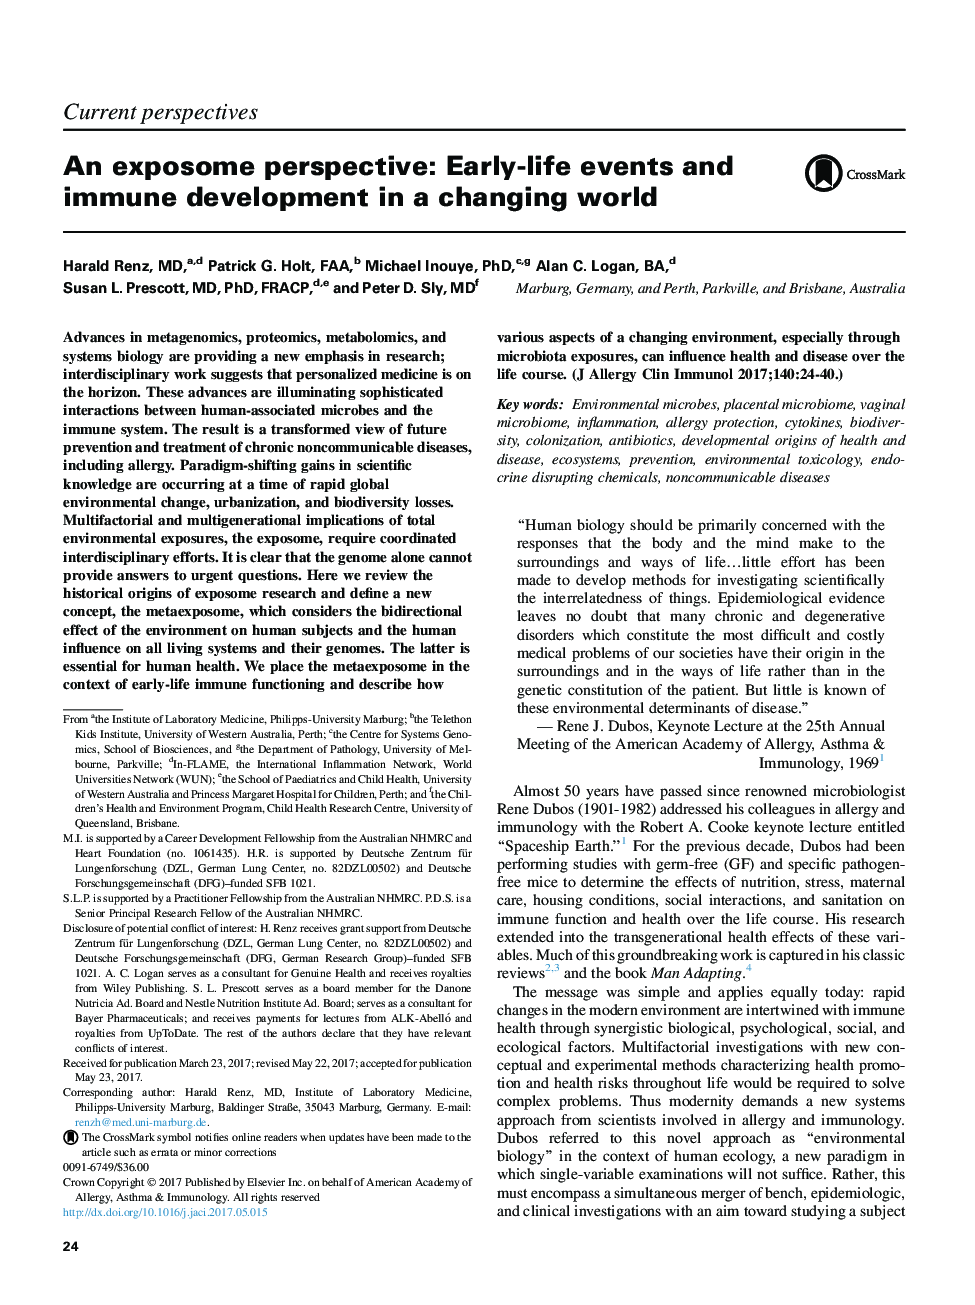 چشم انداز معرفت: حوادث زودهنگام و توسعه ایمنی در یک دنیای در حال تغییر 